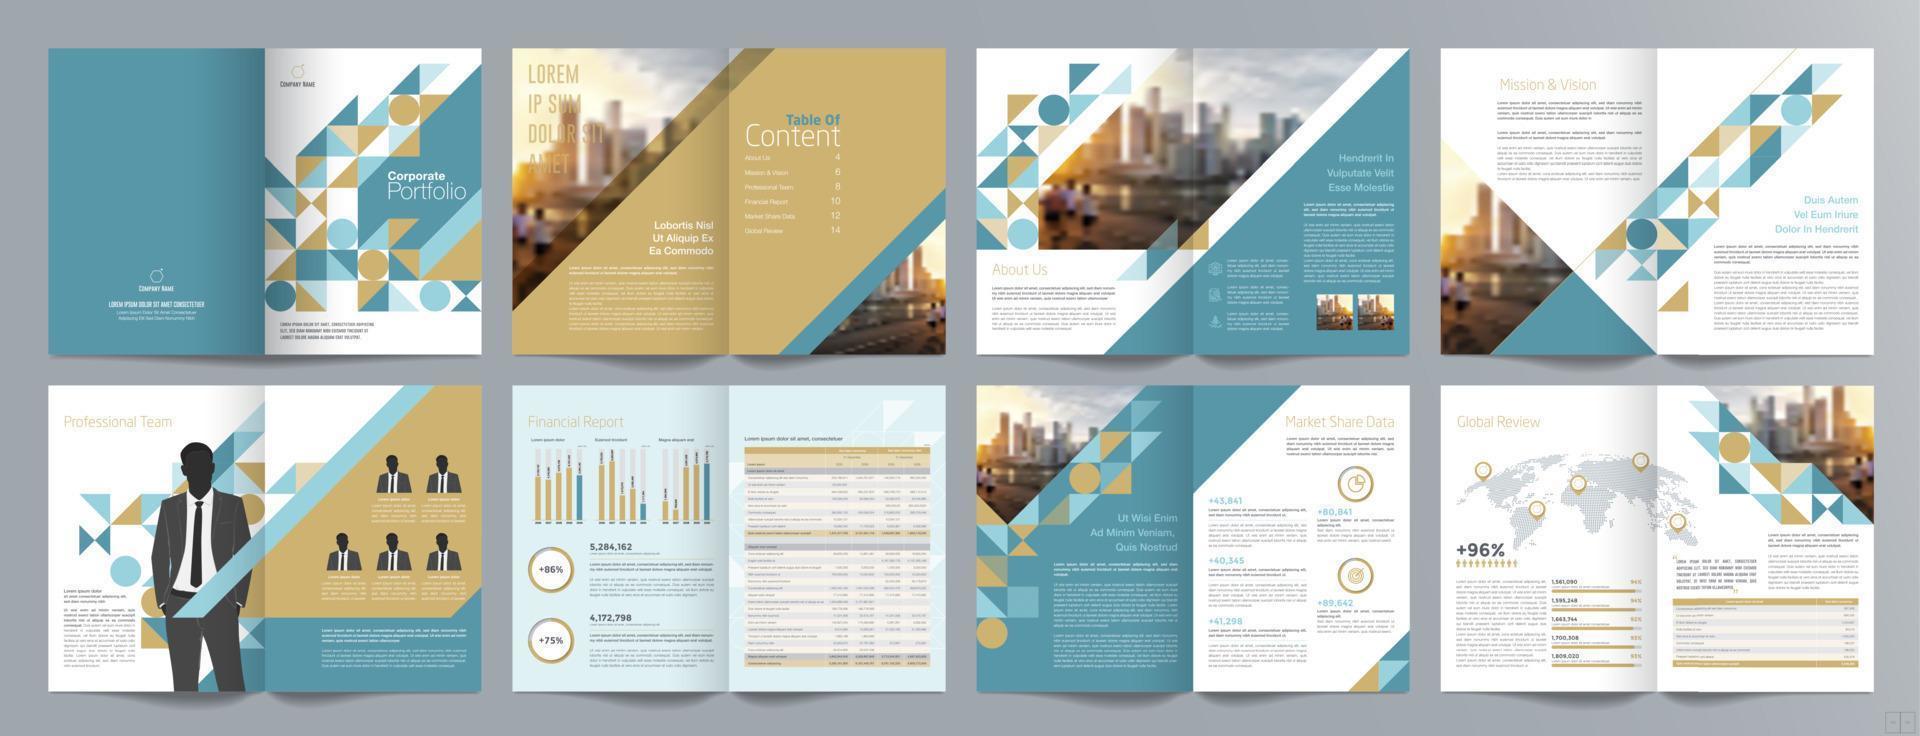 modelo de folheto de guia de apresentação de negócios corporativos, relatório anual, modelo de design de folheto de negócios geométrico plano minimalista de 16 páginas, tamanho a4. vetor